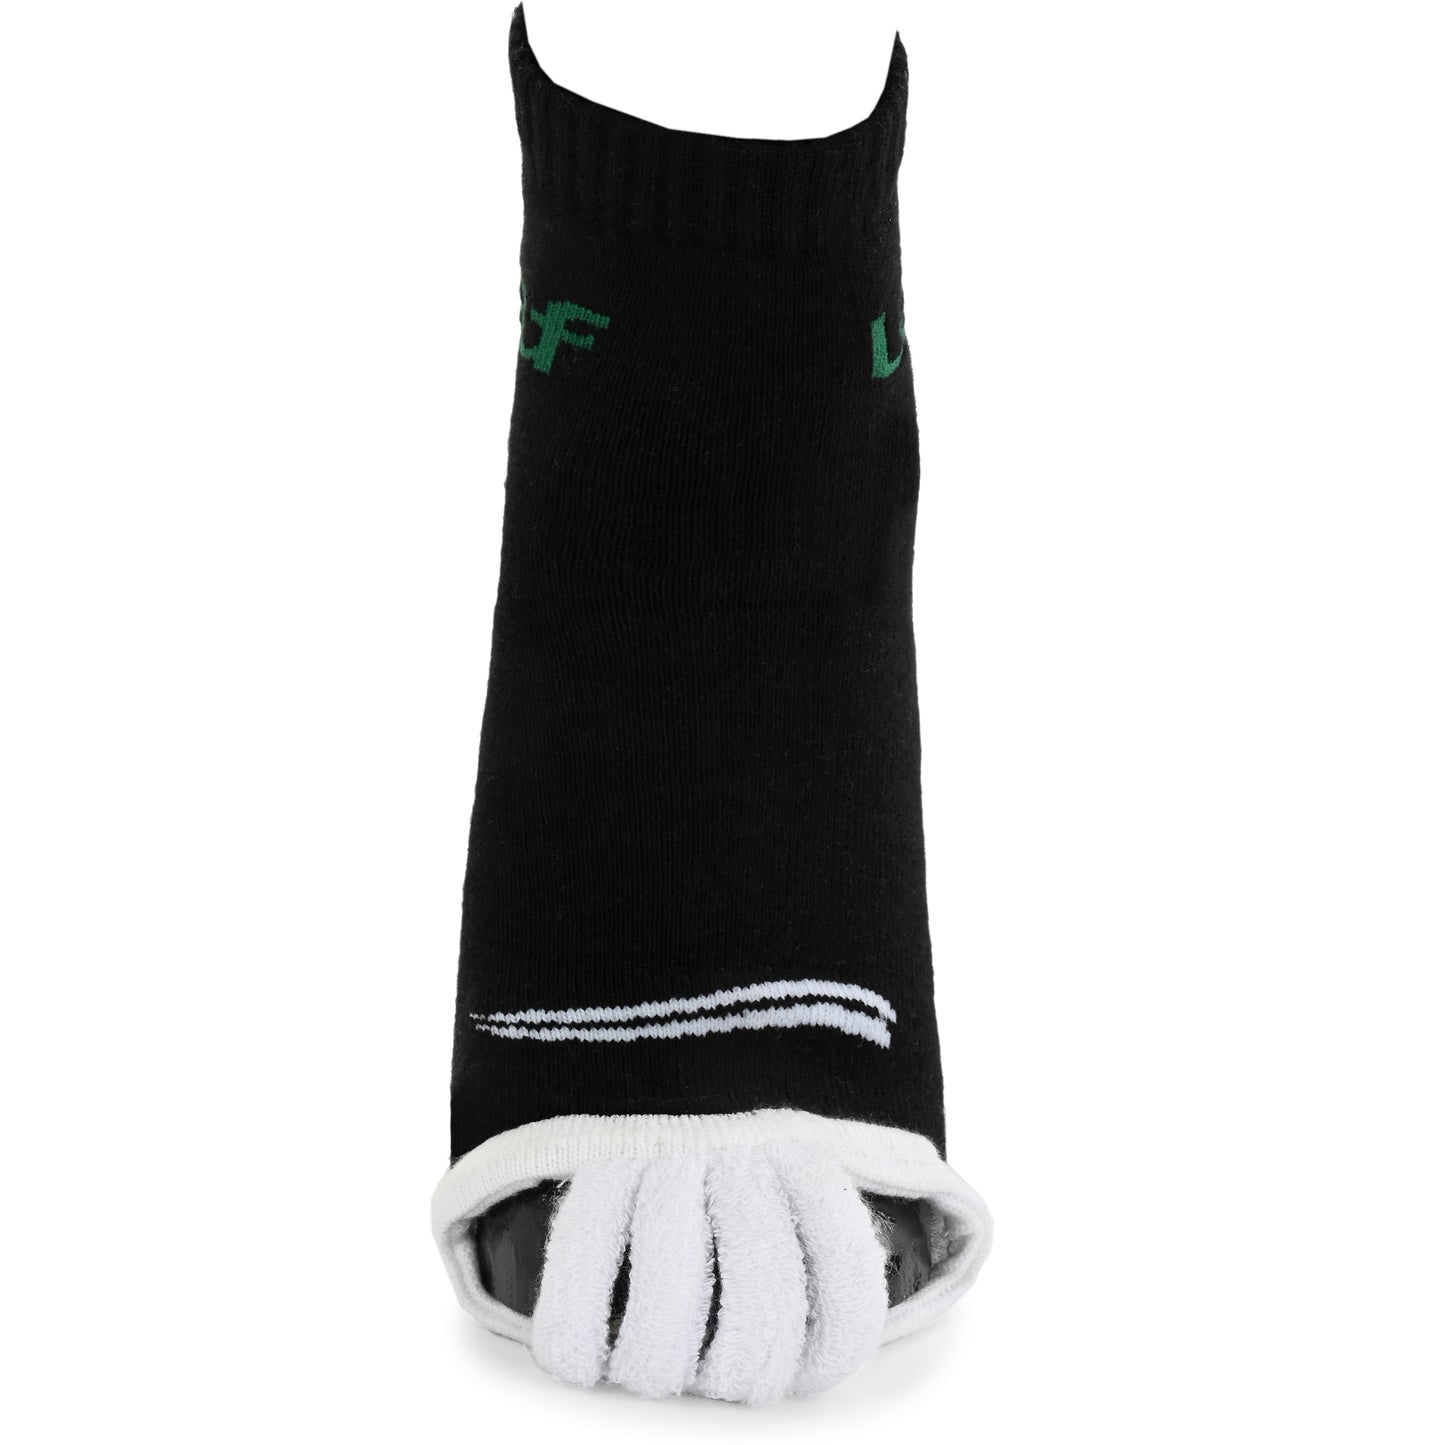 Leaf ortho Foot alignment socks Set of 2 pairs